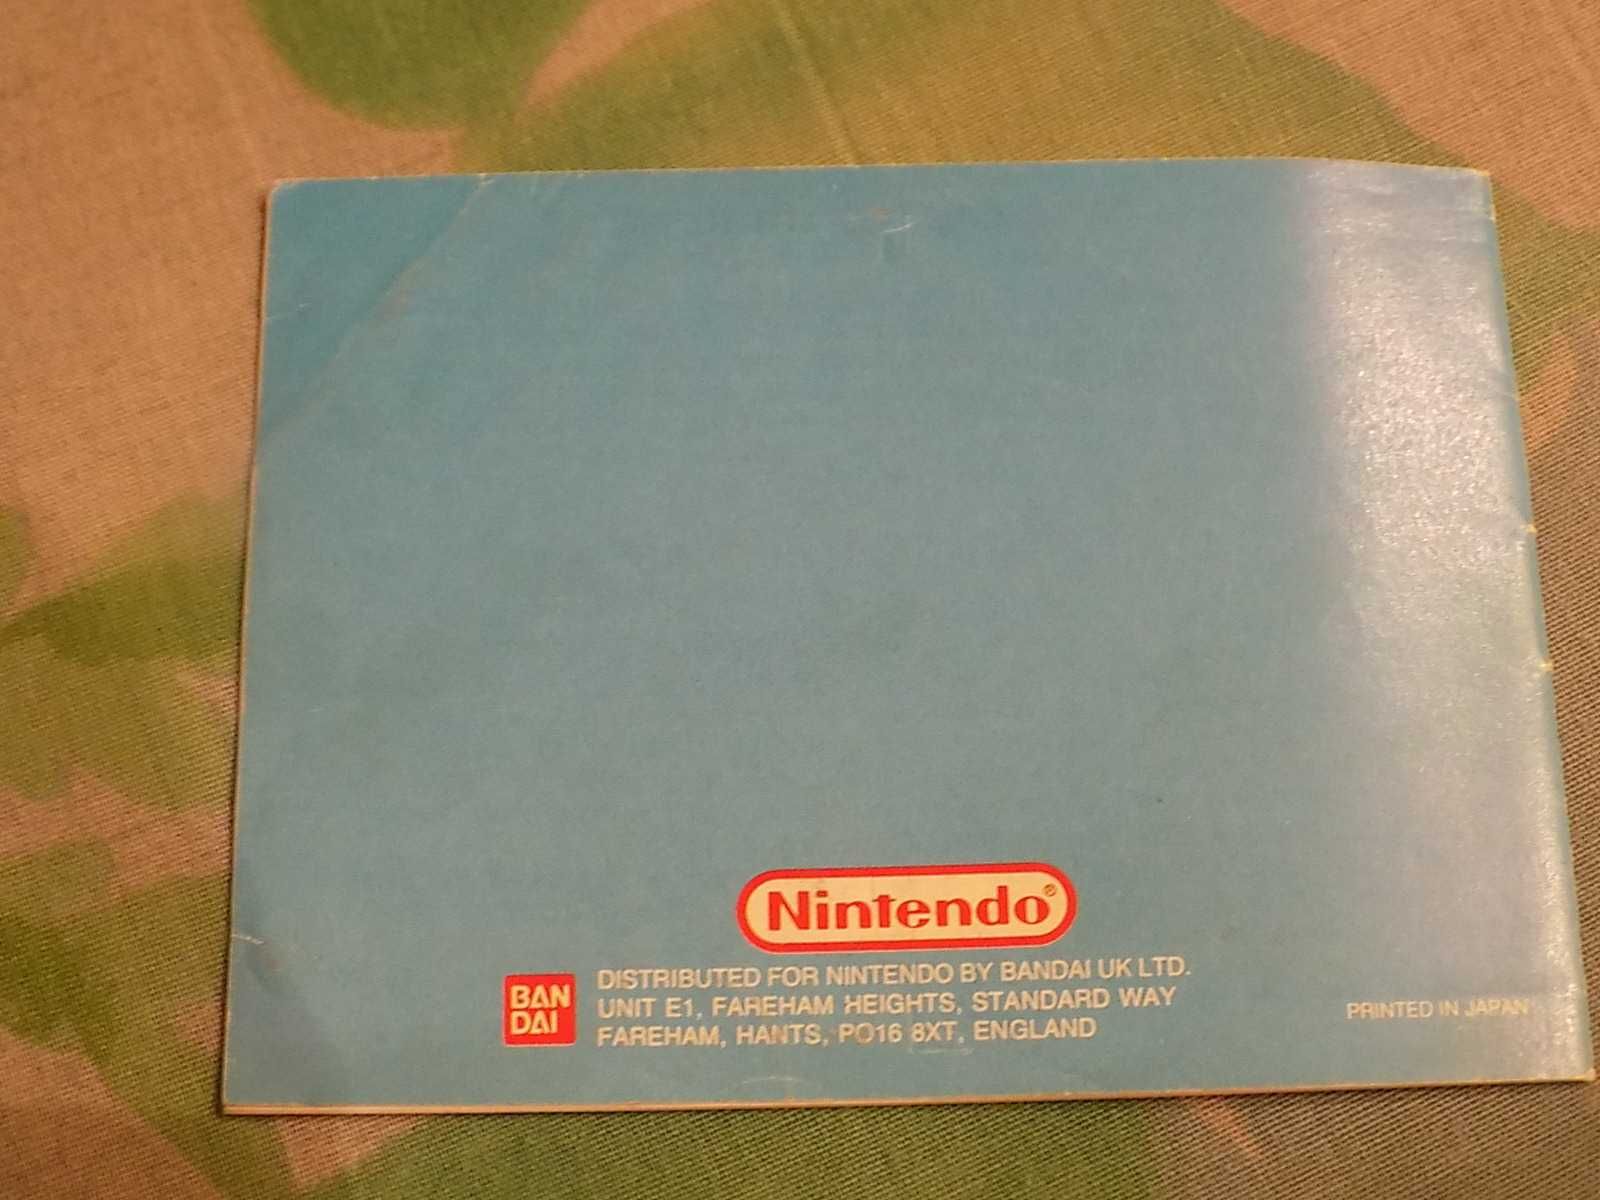 Balloon Kid Nintendo Game Boy - sama angielska instrukcja w bdb stanie